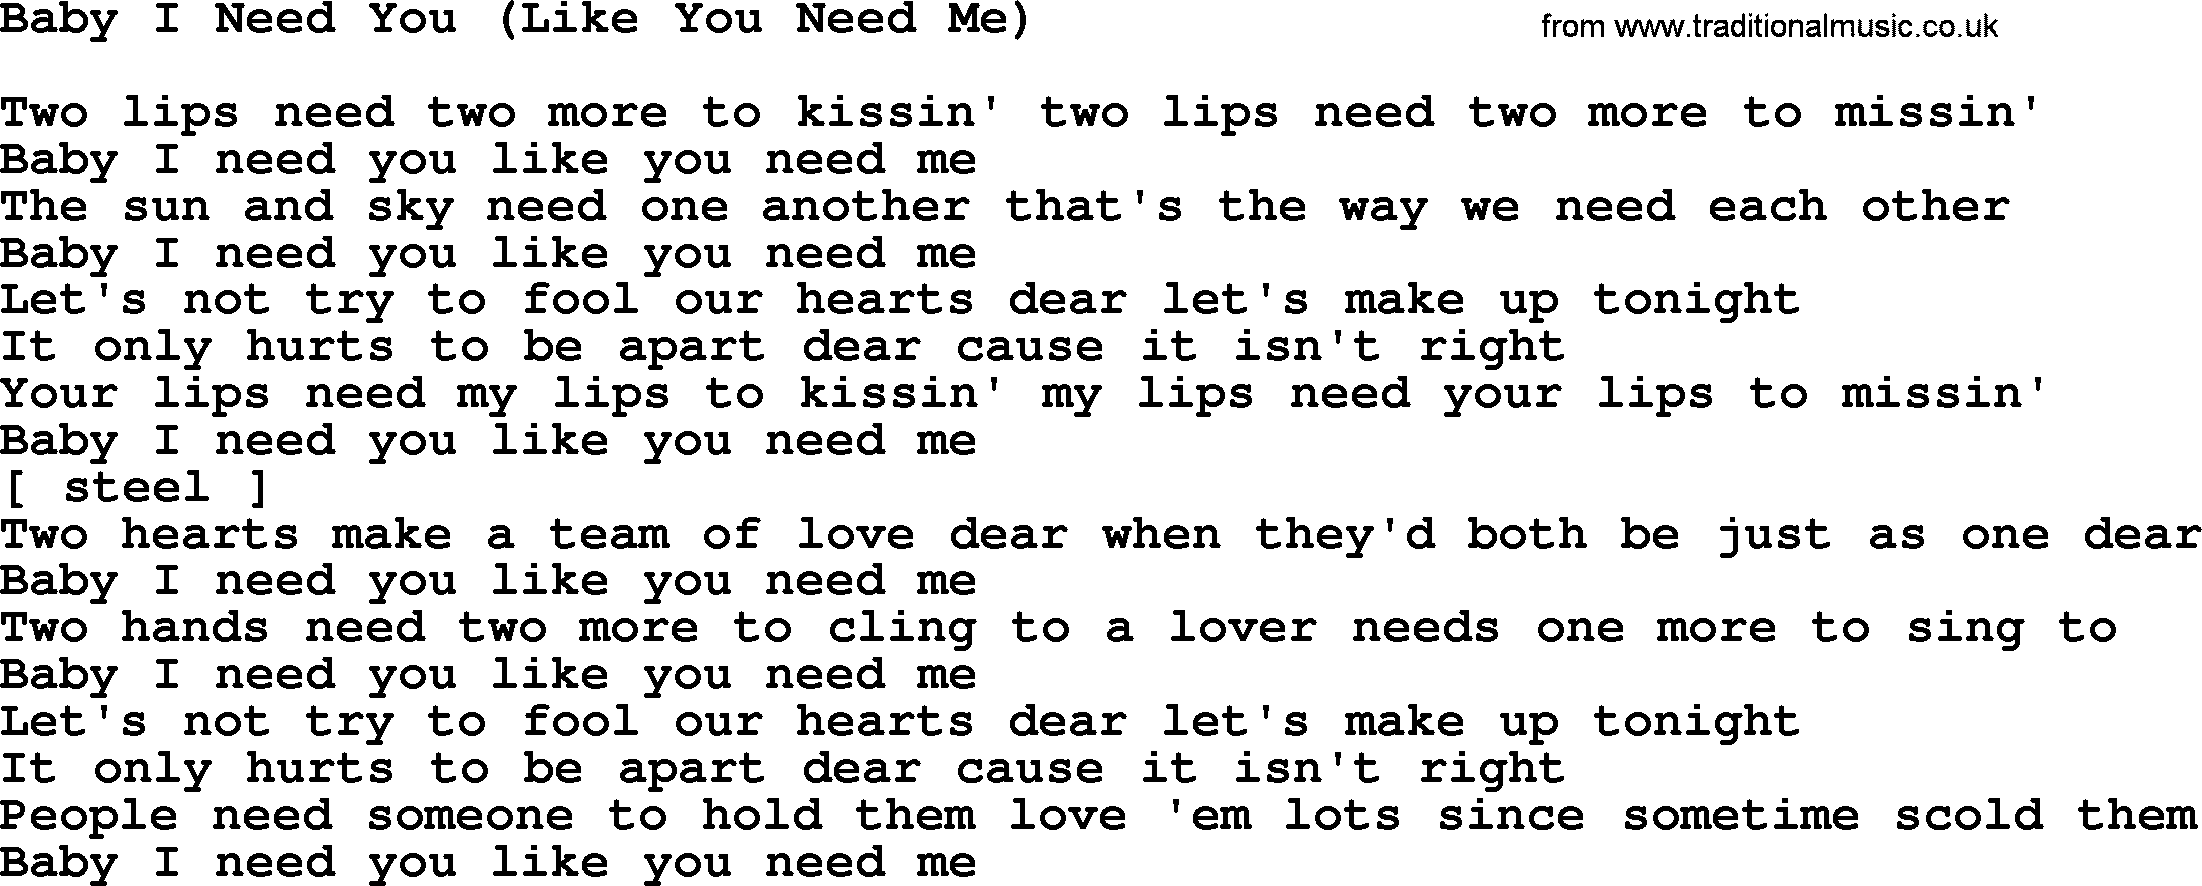 Marty Robbins song: Baby I Need You Like You Need Me, lyrics